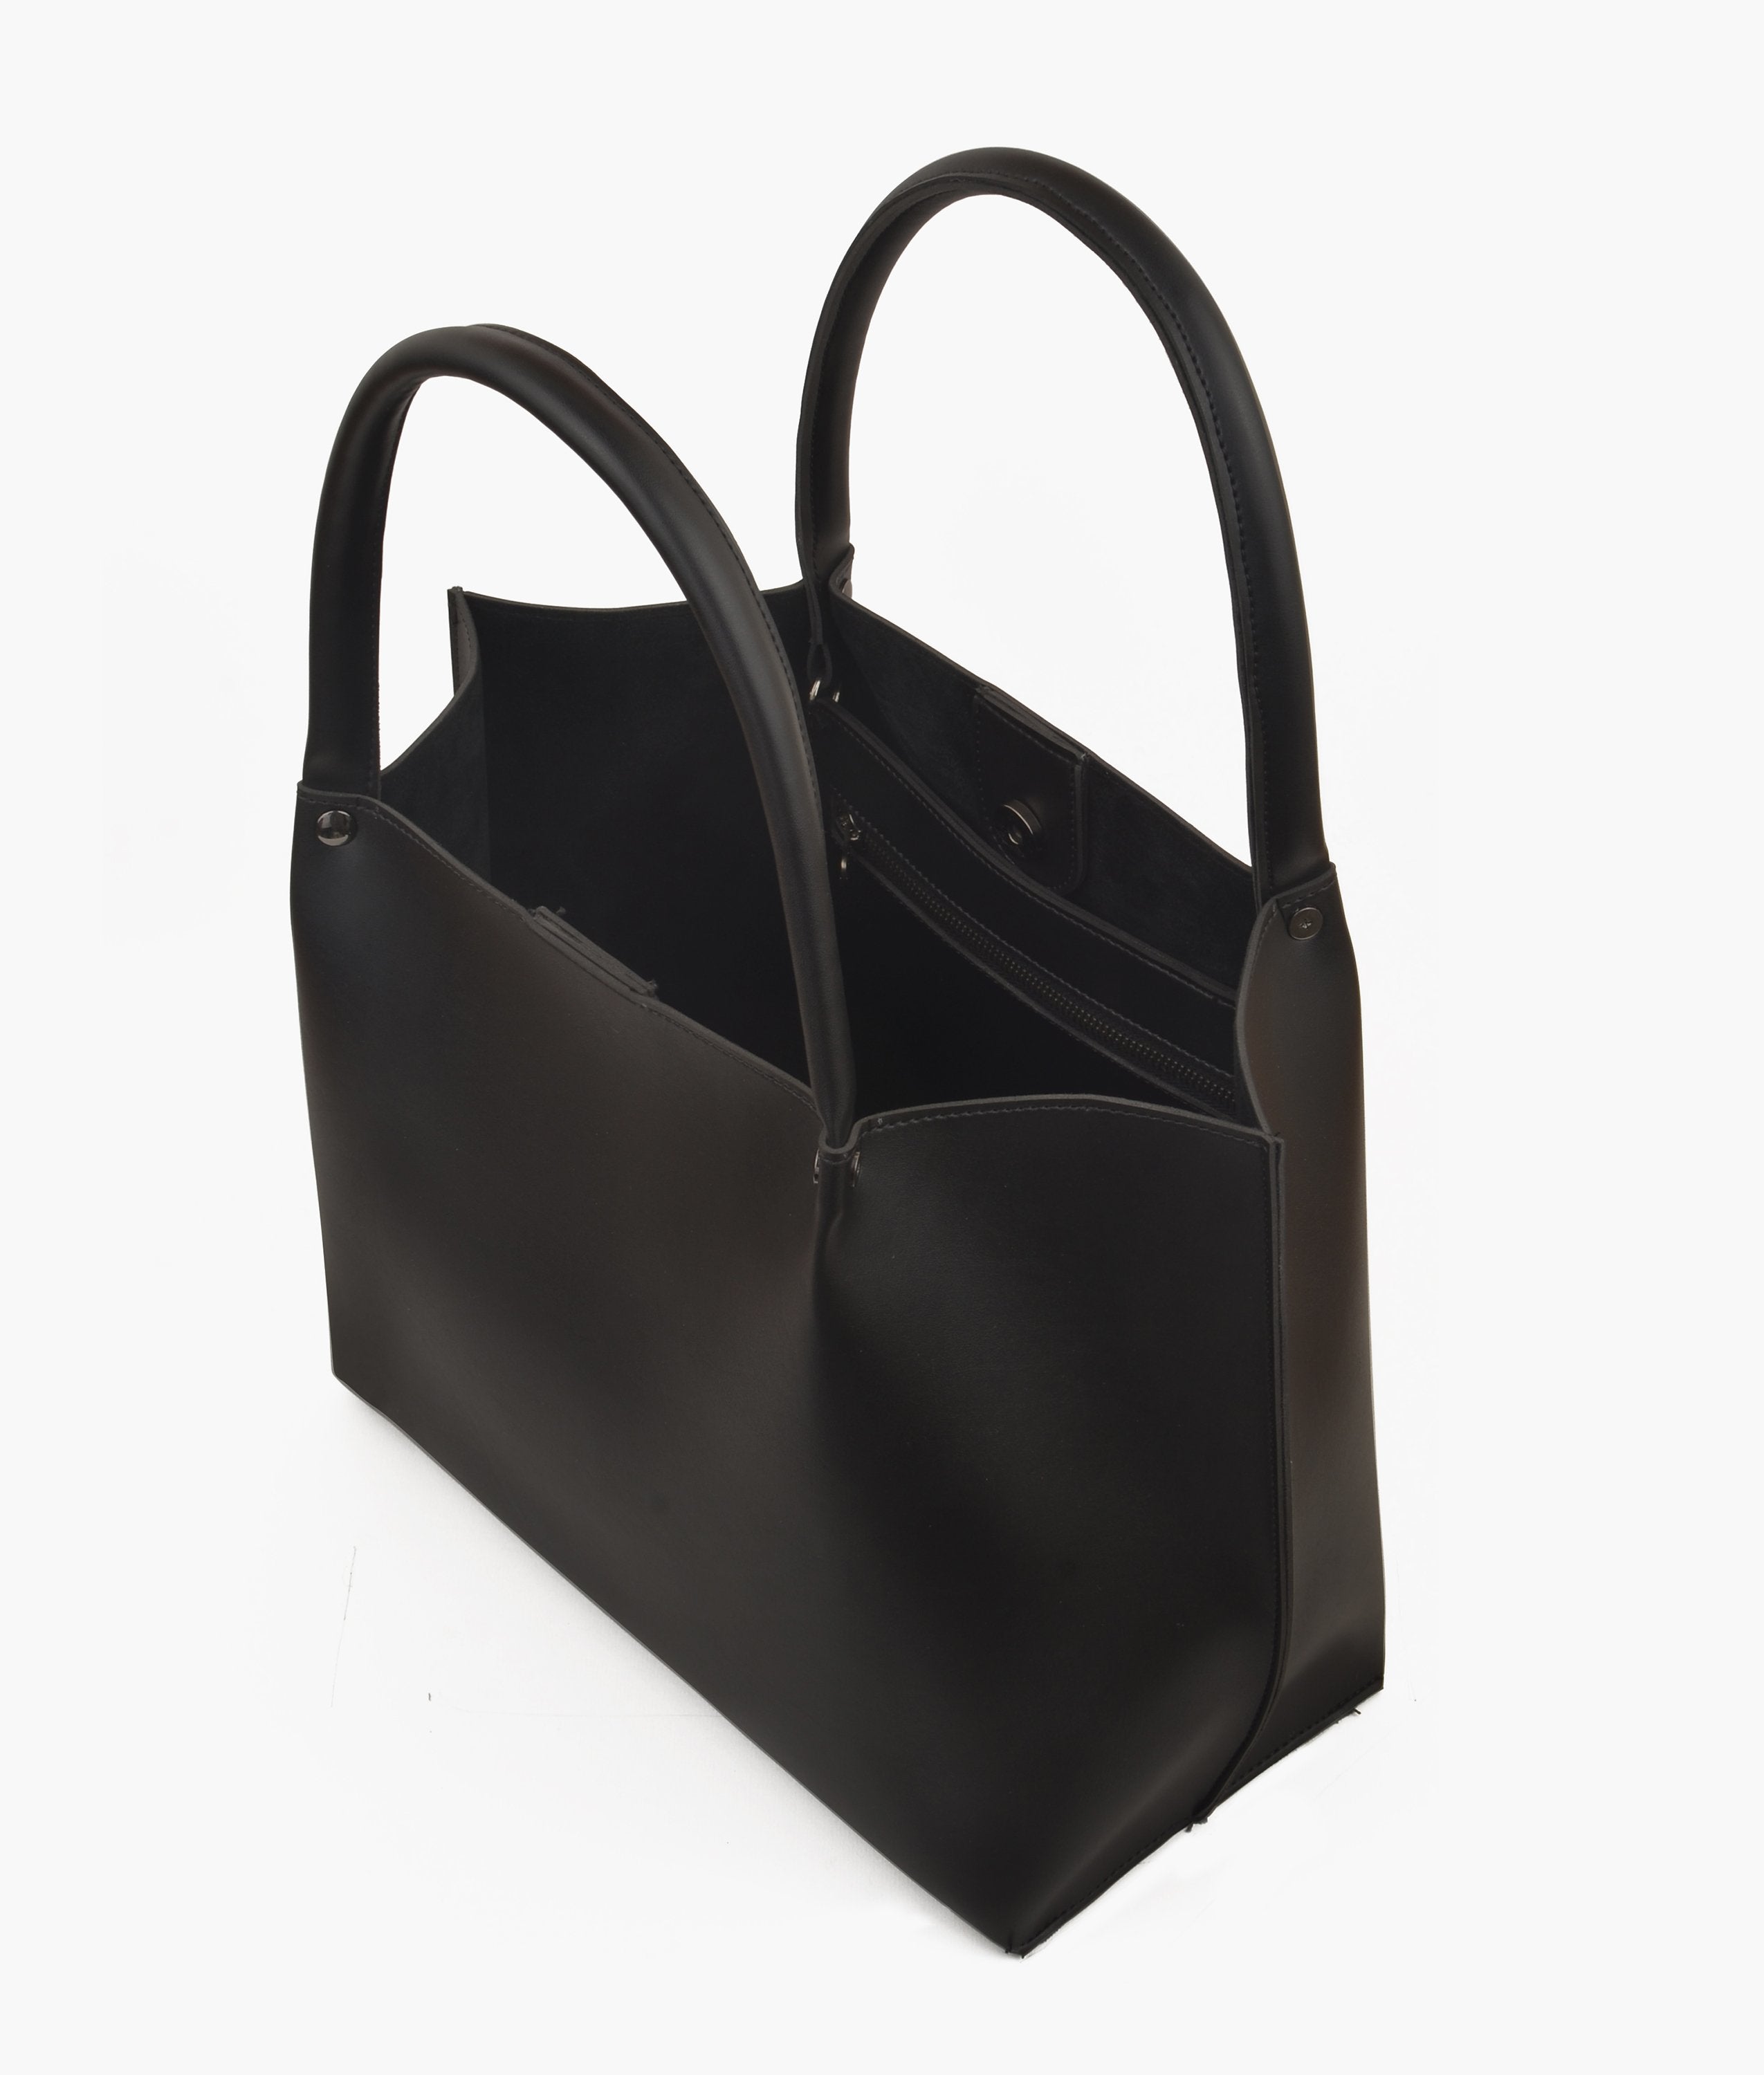 Black tote bag